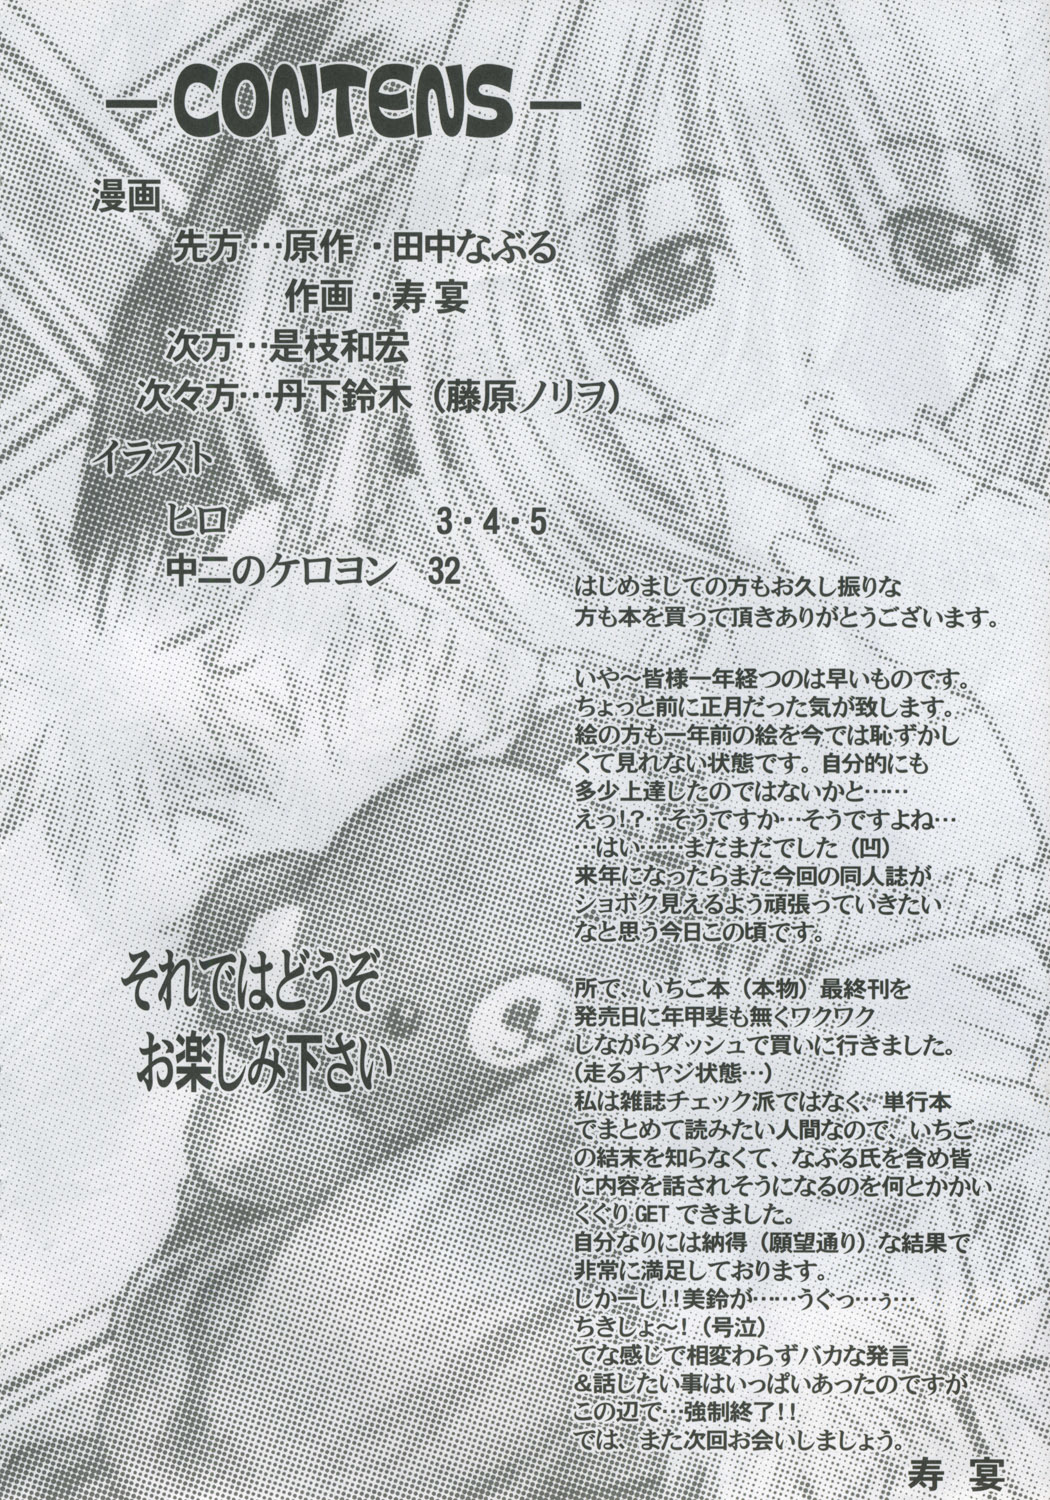 PM08 Shuu Ichigo Gari ichigo 4 hentai manga